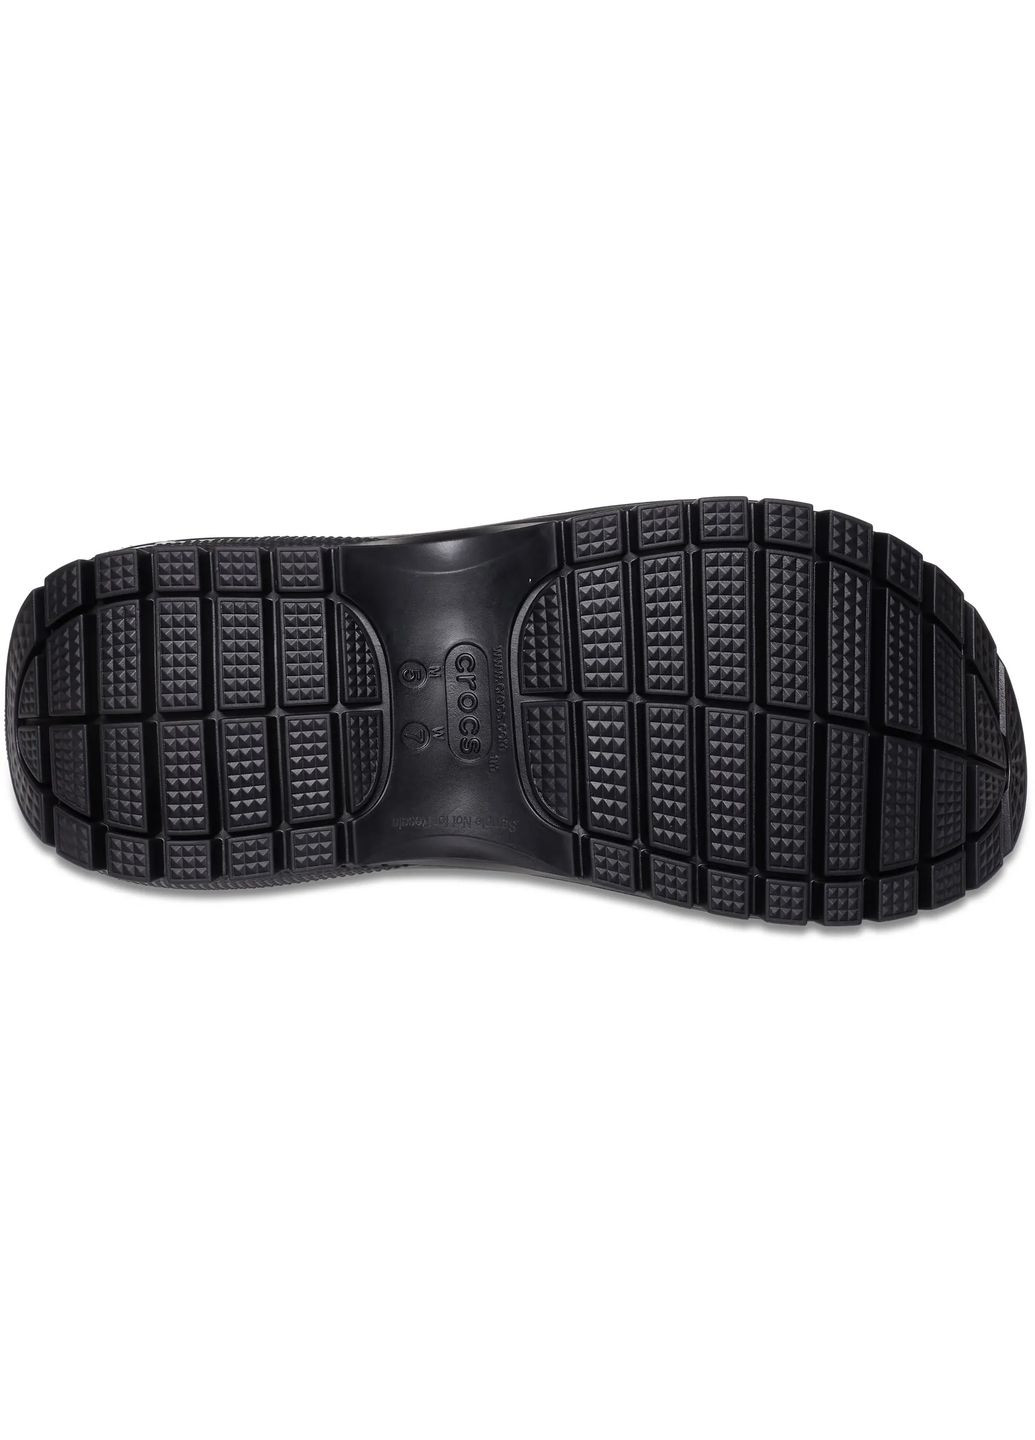 Повседневные женские сандалии mega crush sandal black m4w6-36-23 см Crocs